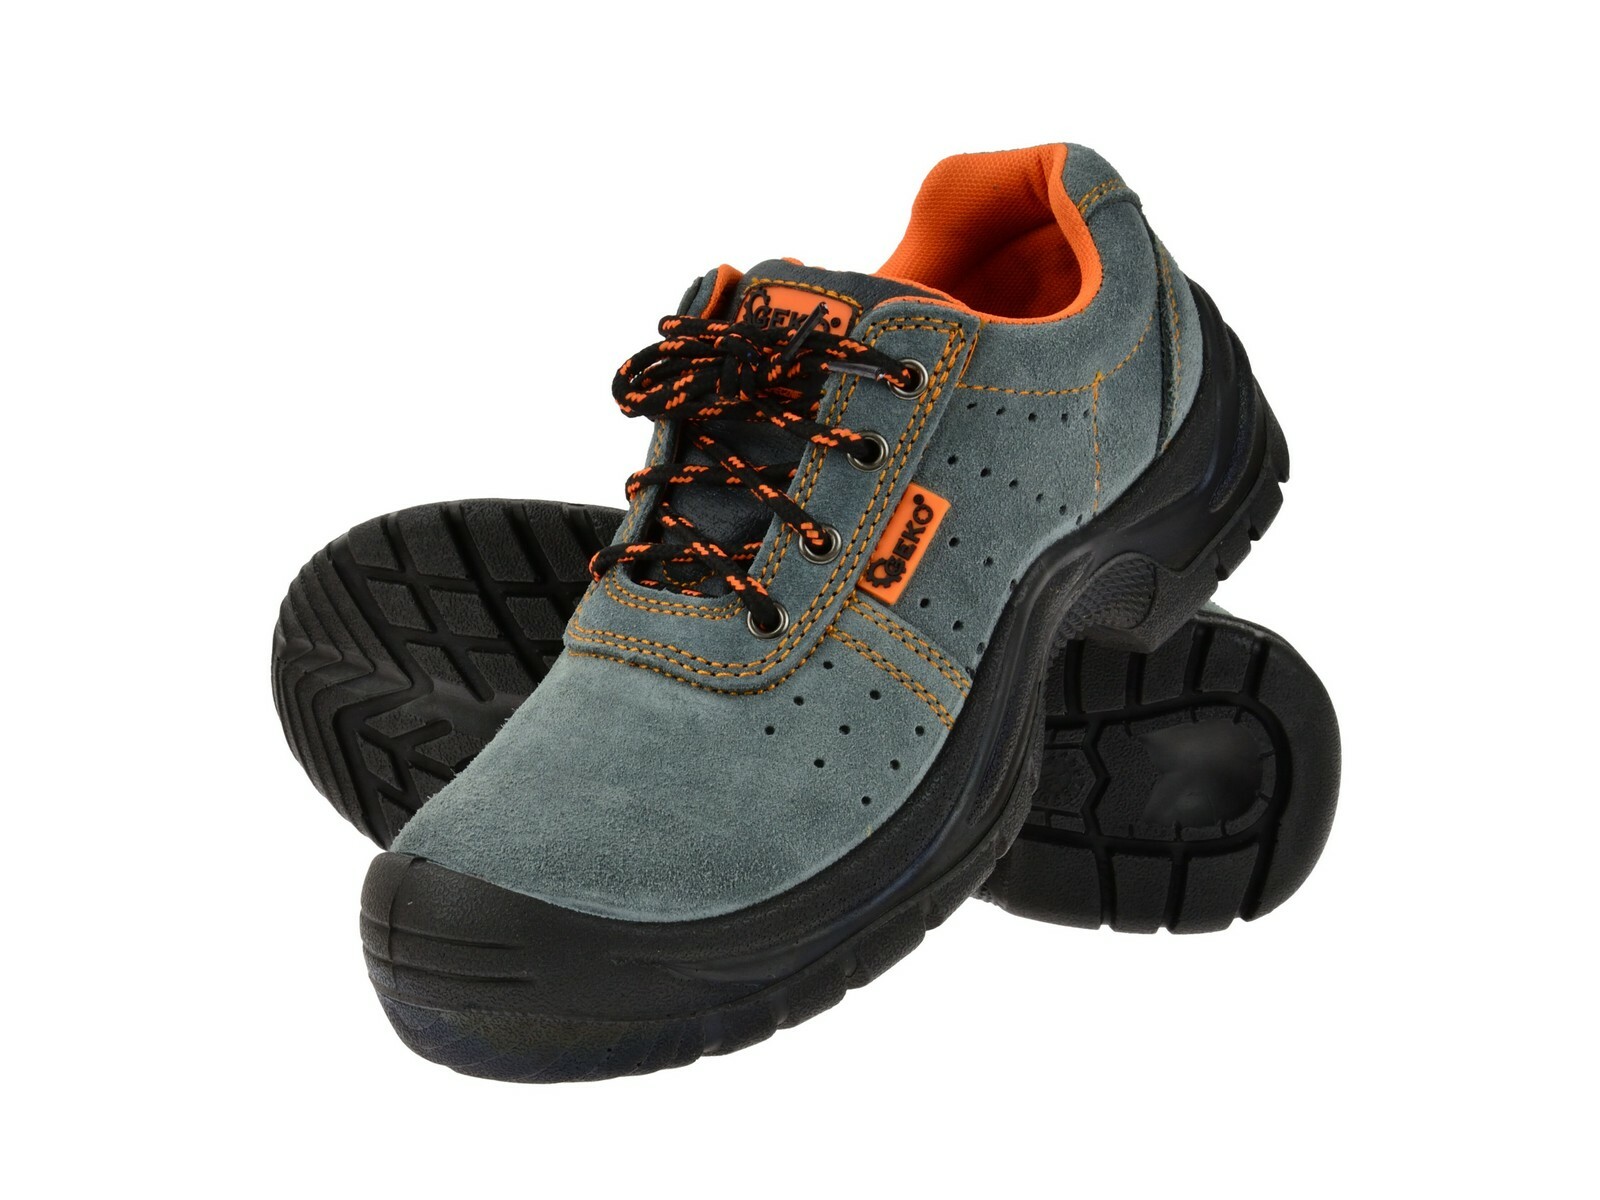 Ochranné pracovní boty semišové model č.3 vel.42 GEKO nářadí G90522 + Dárek, servis bez starostí v hodnotě 300Kč